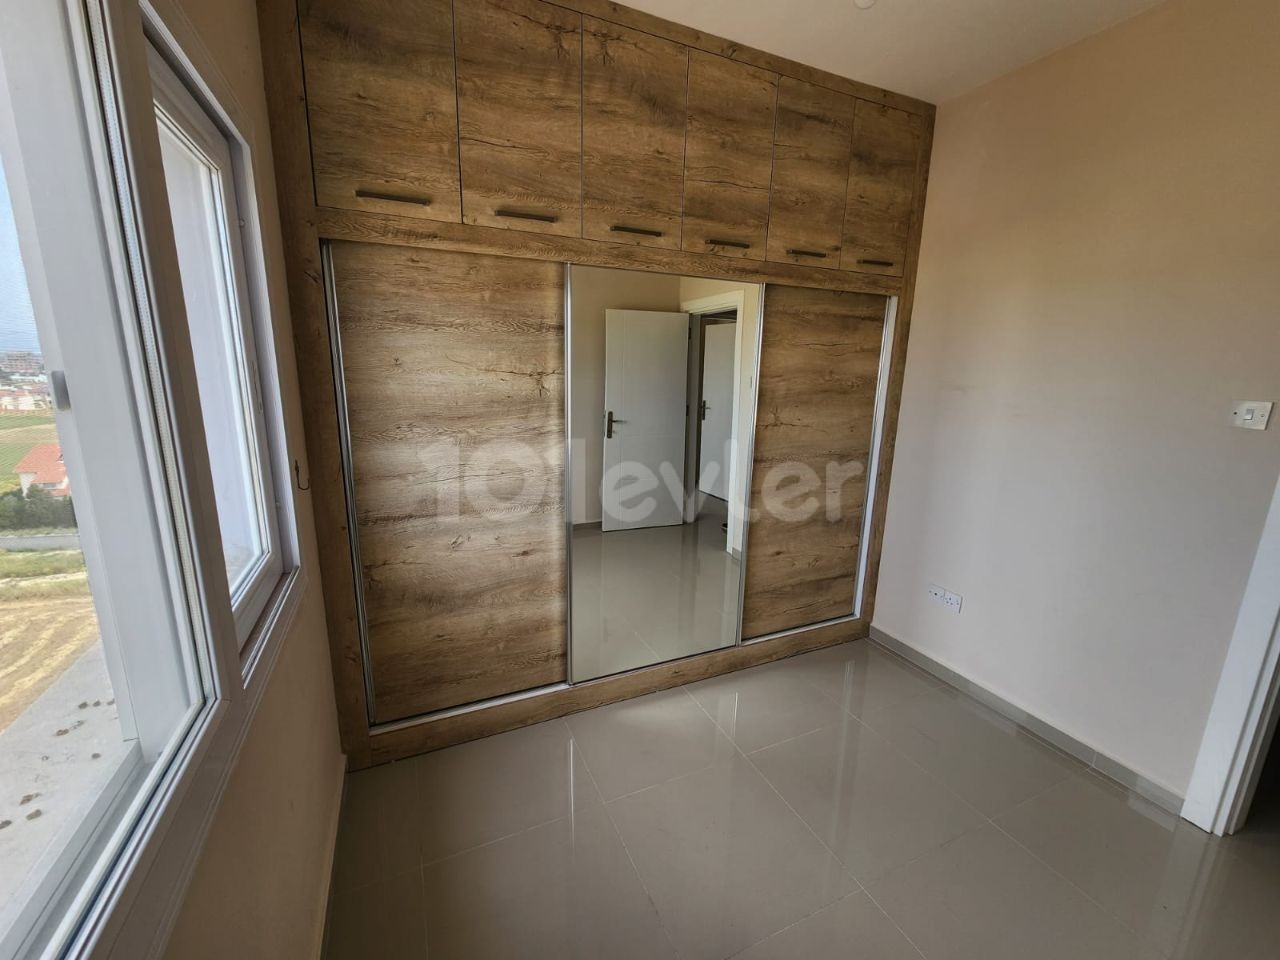 آپارتمان 3+1 برای اجاره در YENİ BOĞAZİÇİ از 15000 TL، پرداخت 6 ماهه + سپرده + کمیسیون